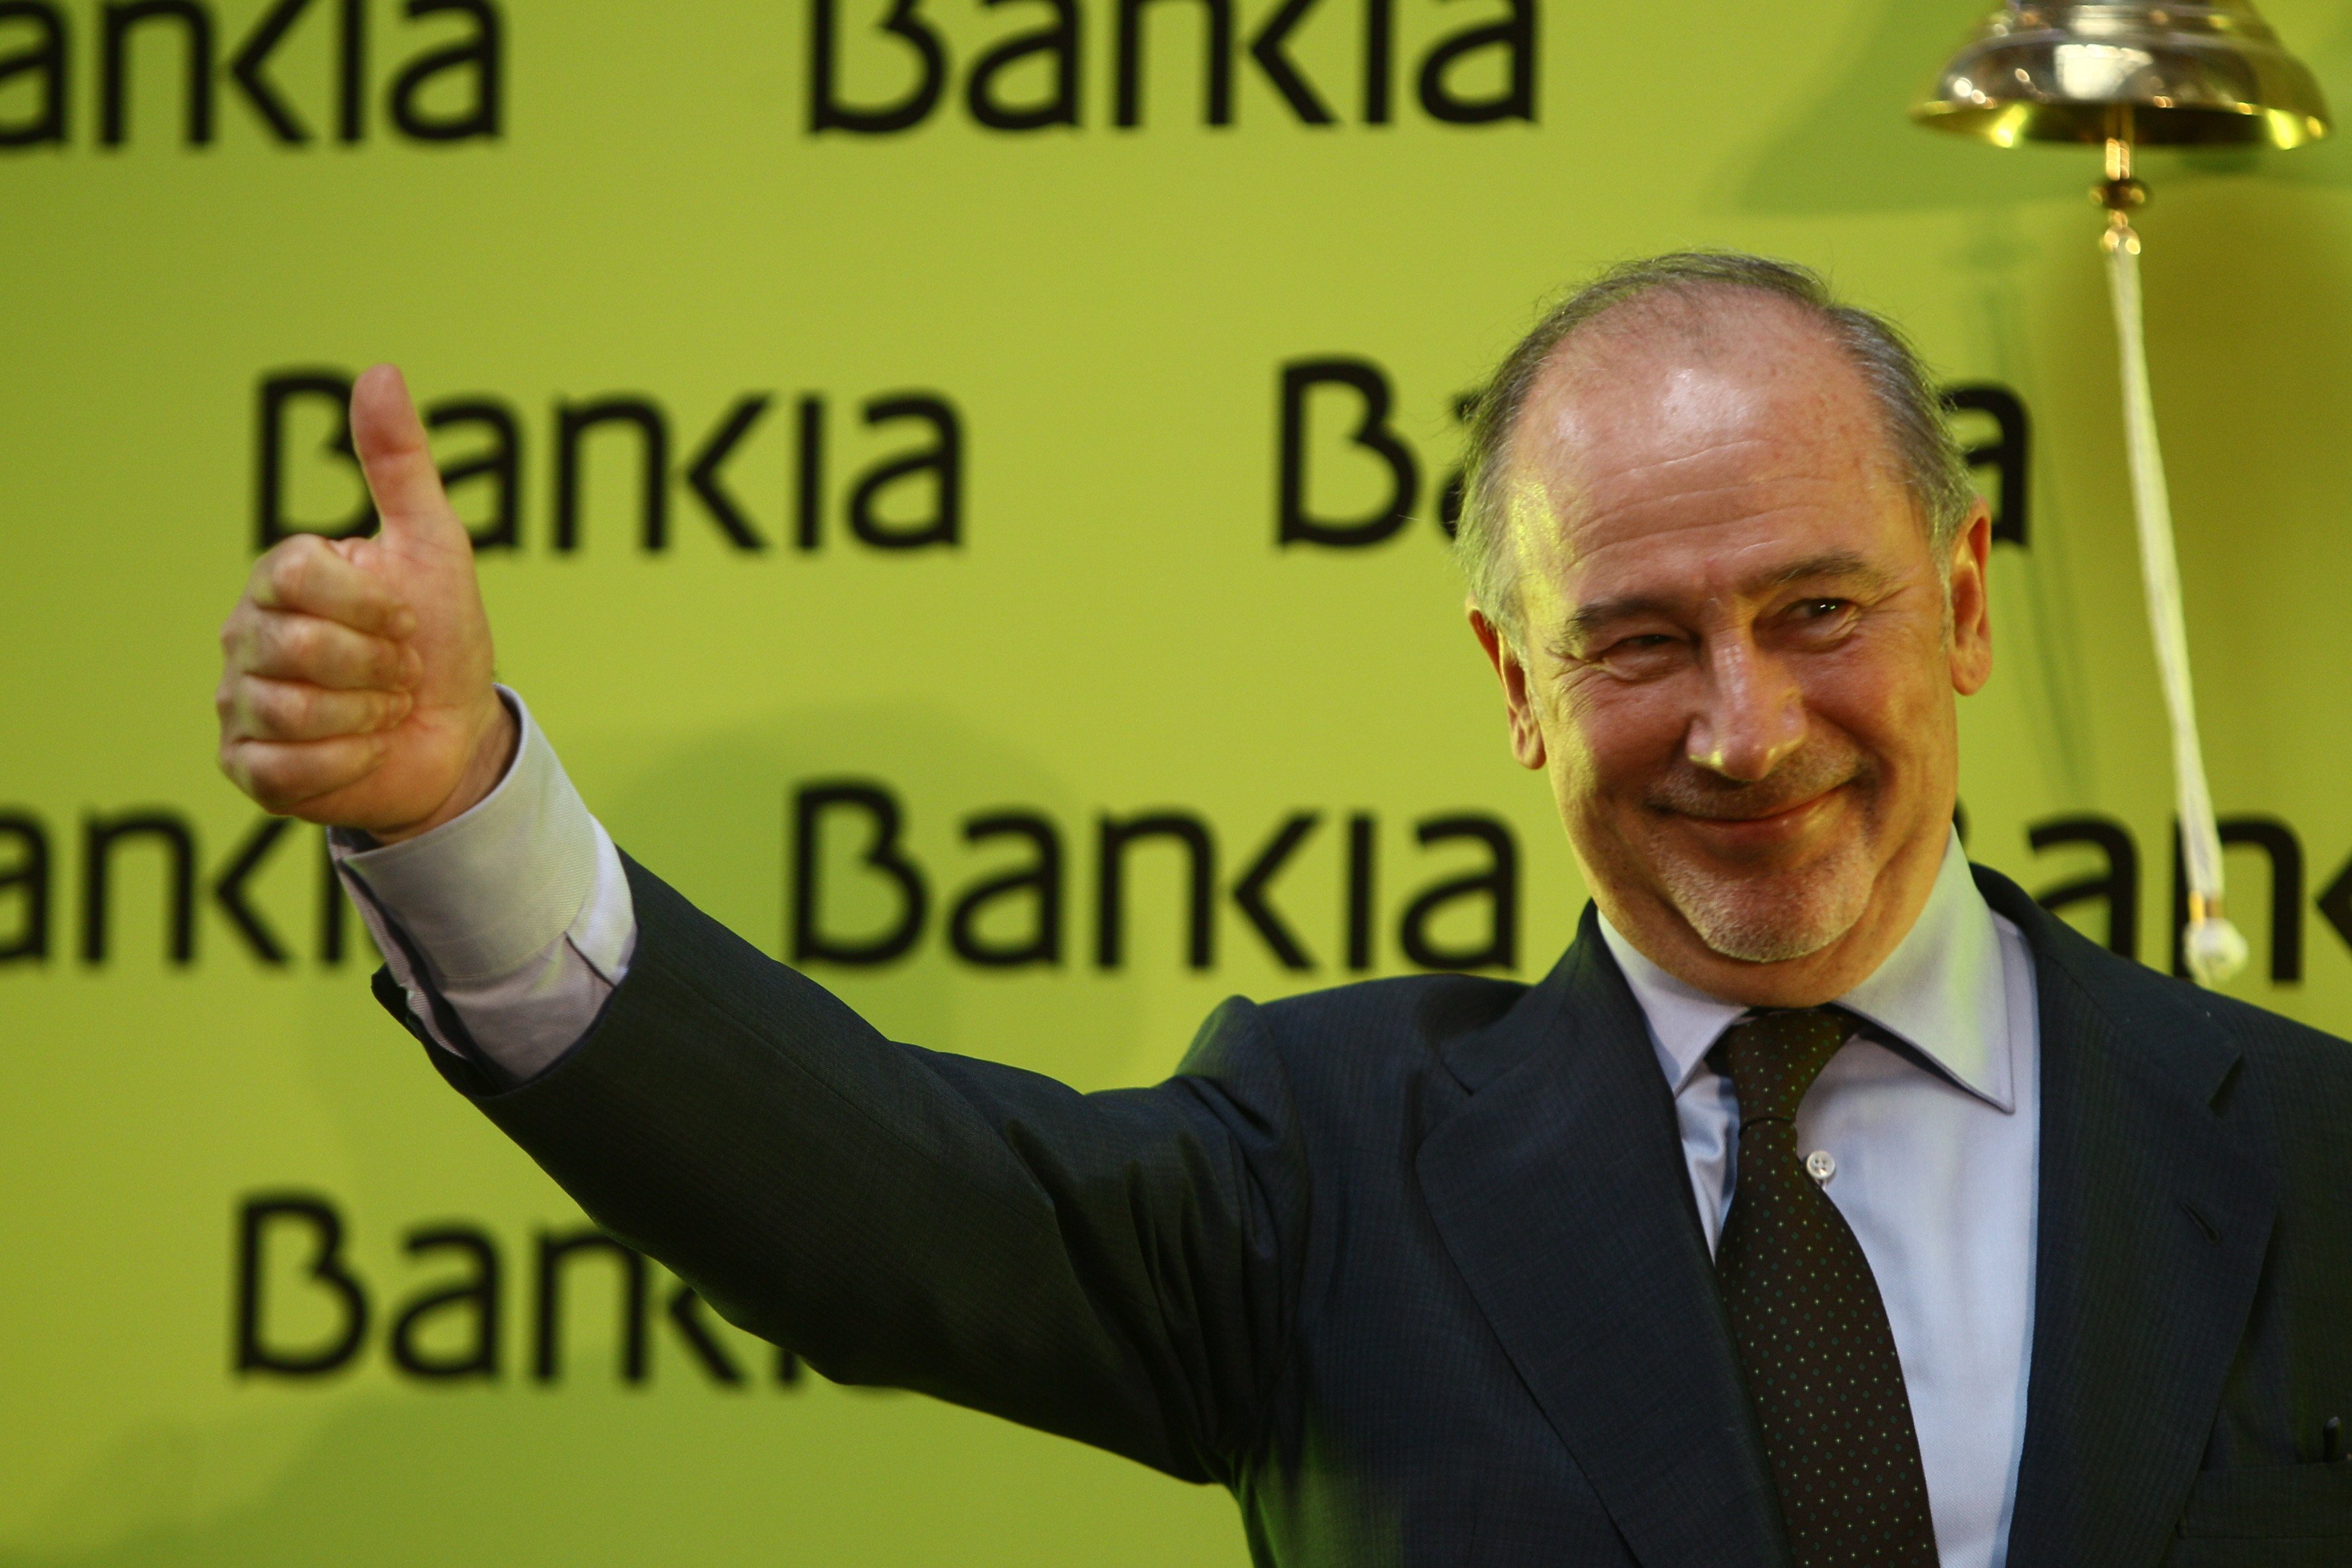 Portadas que se alegran por la impunidad en el caso Bankia